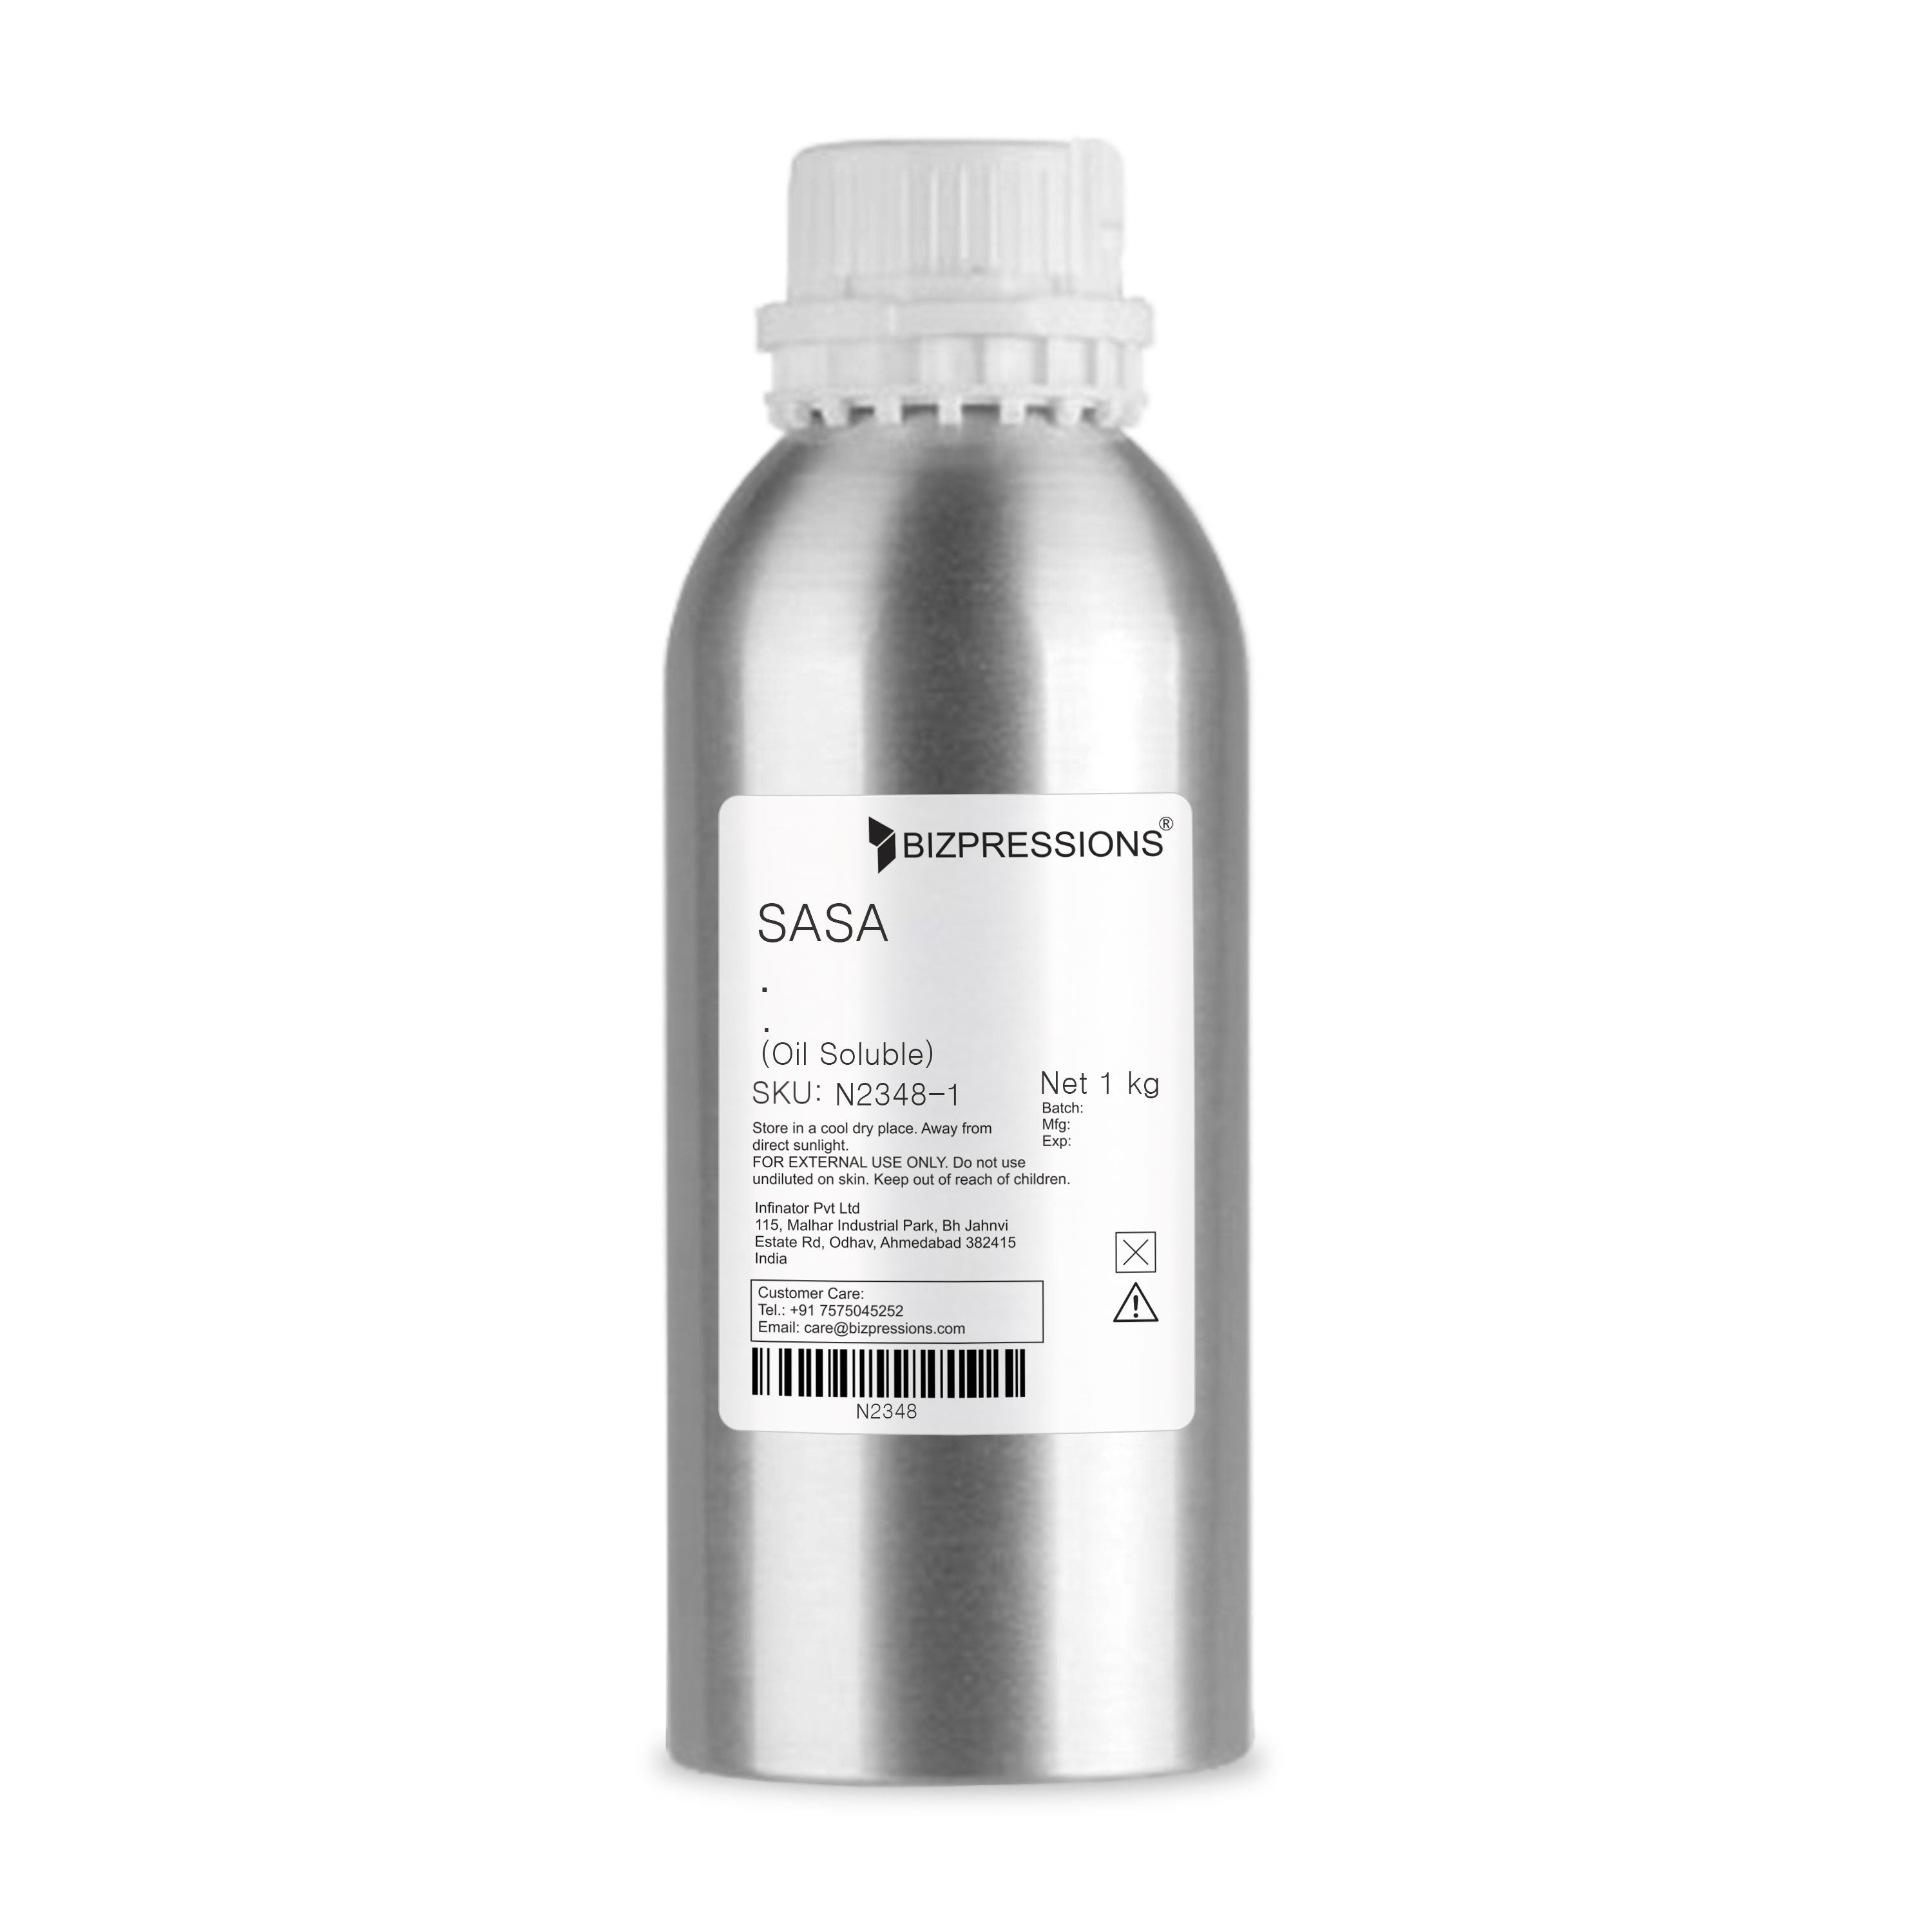 SASA - Fragrance (Oil Soluble)